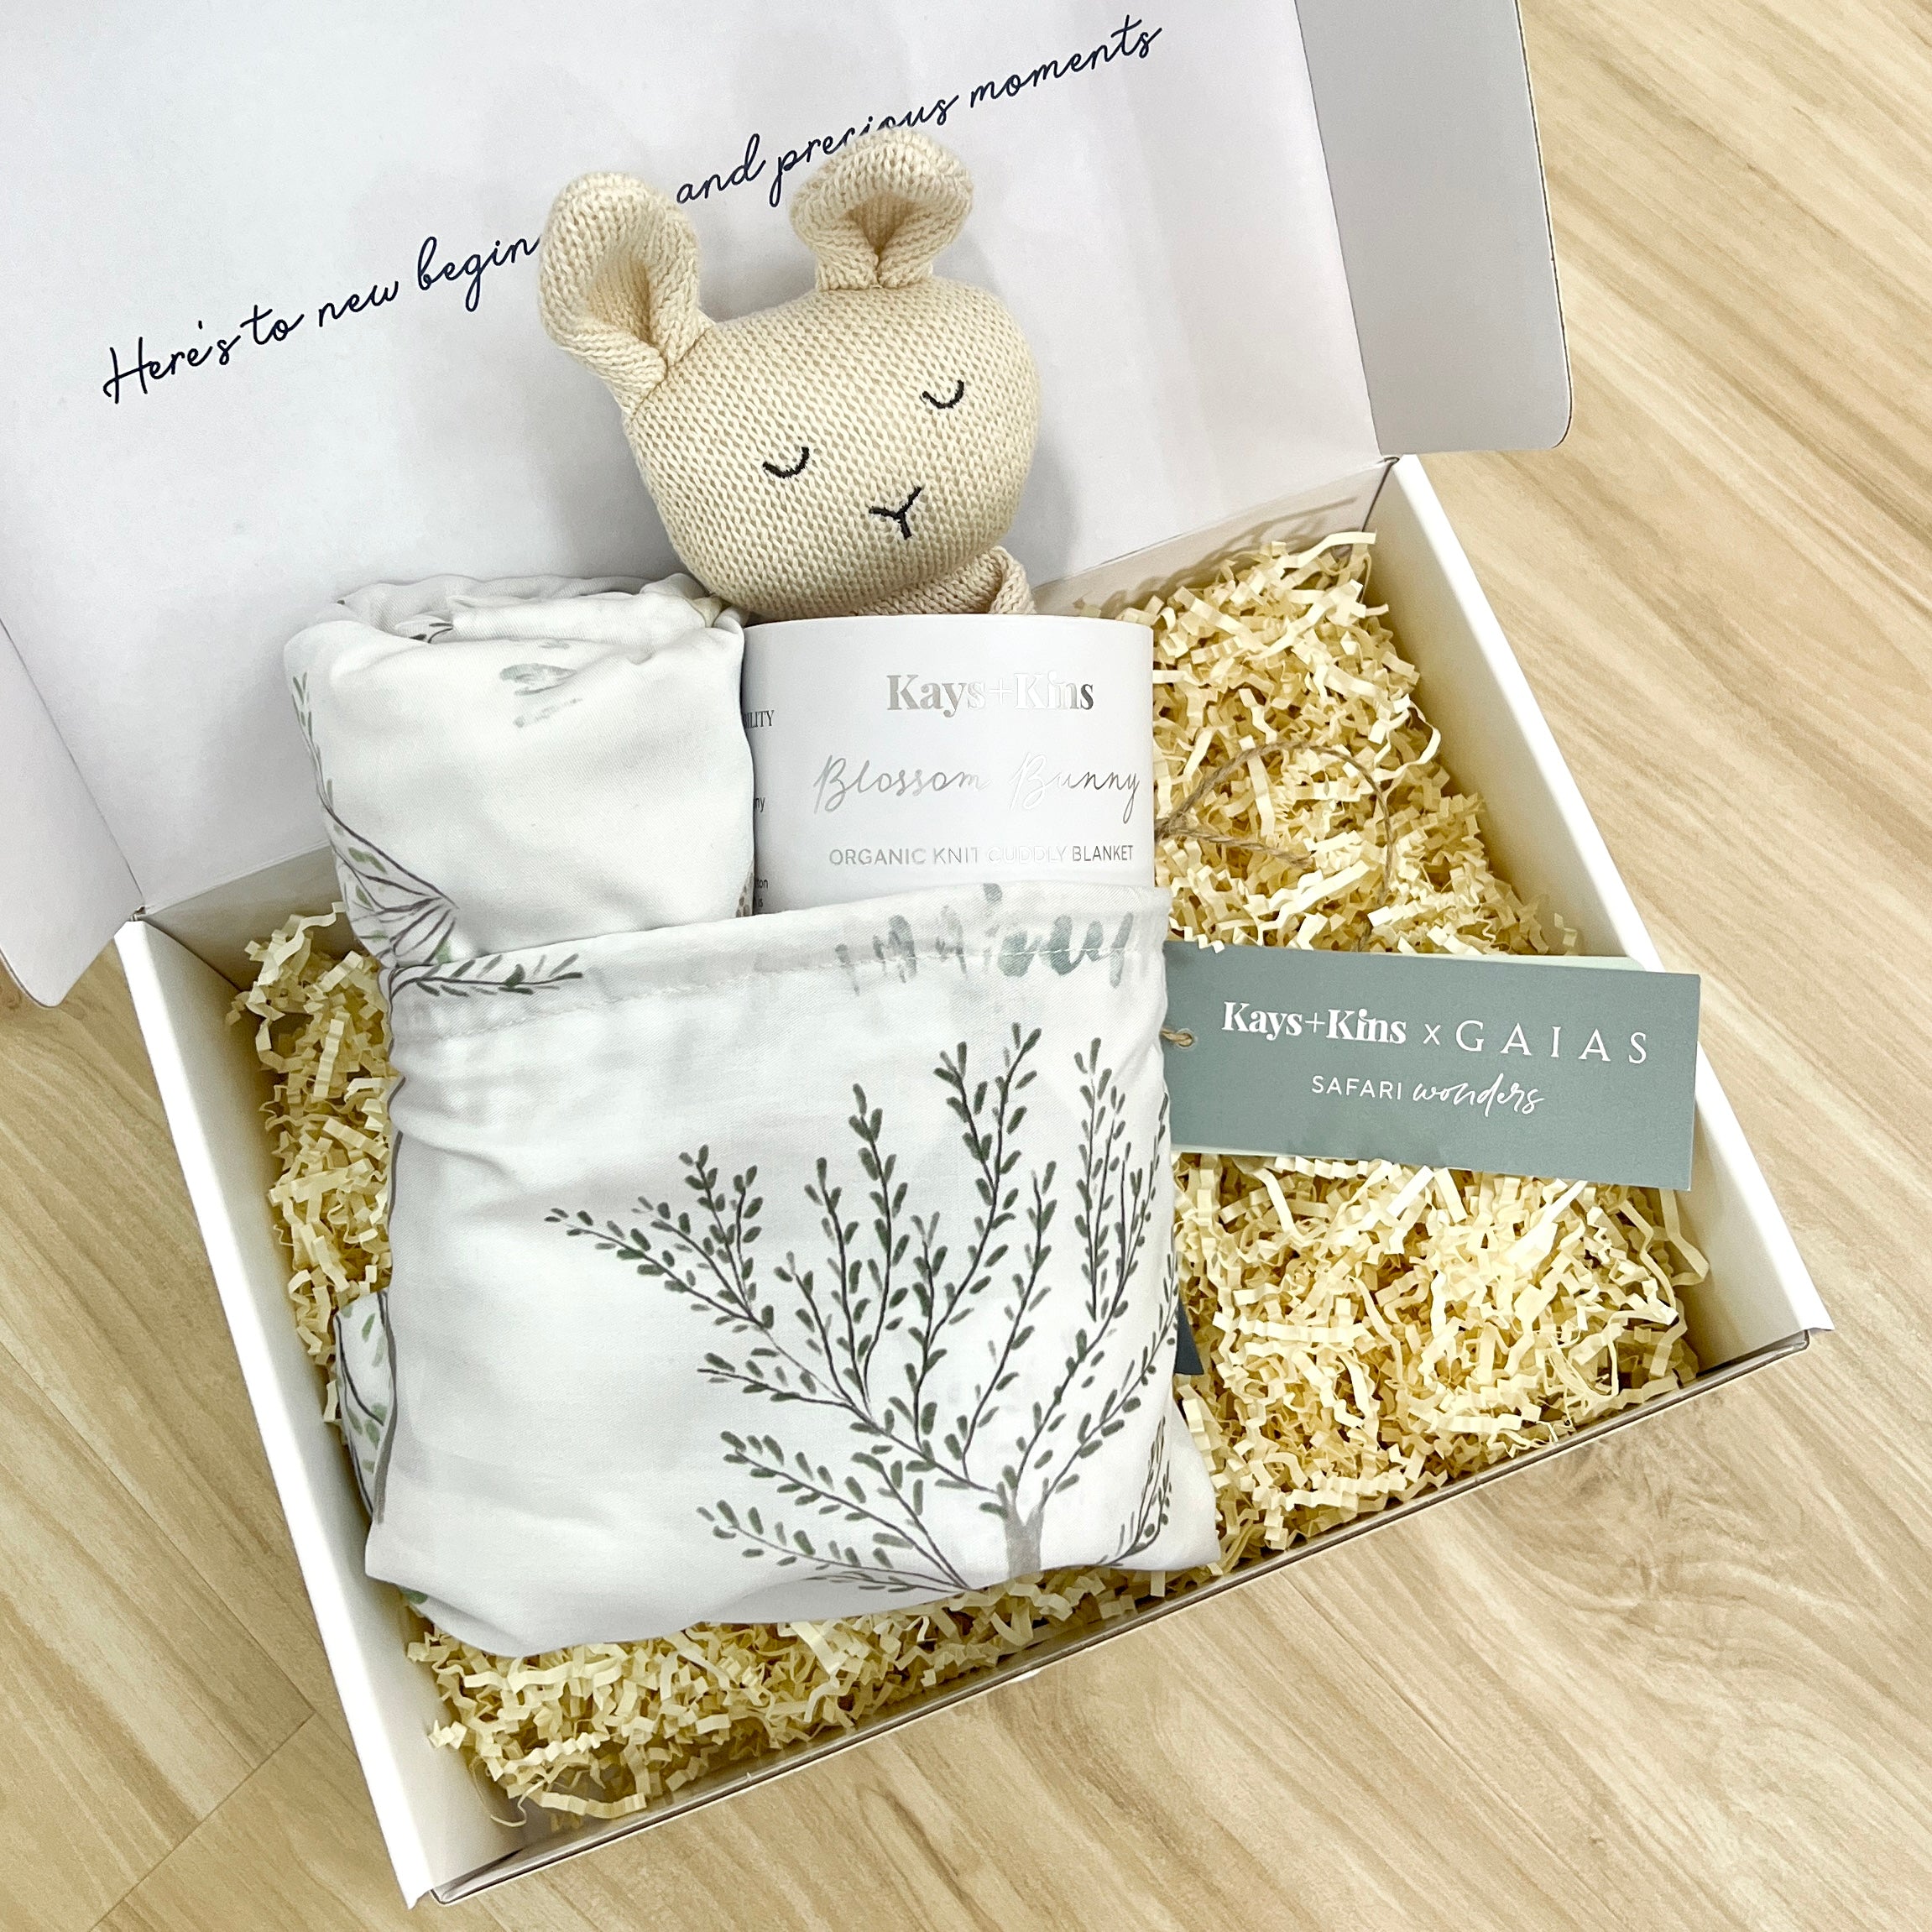 [Kays+Kins x GAIAS] Safari Dreams Baby Gift Sets